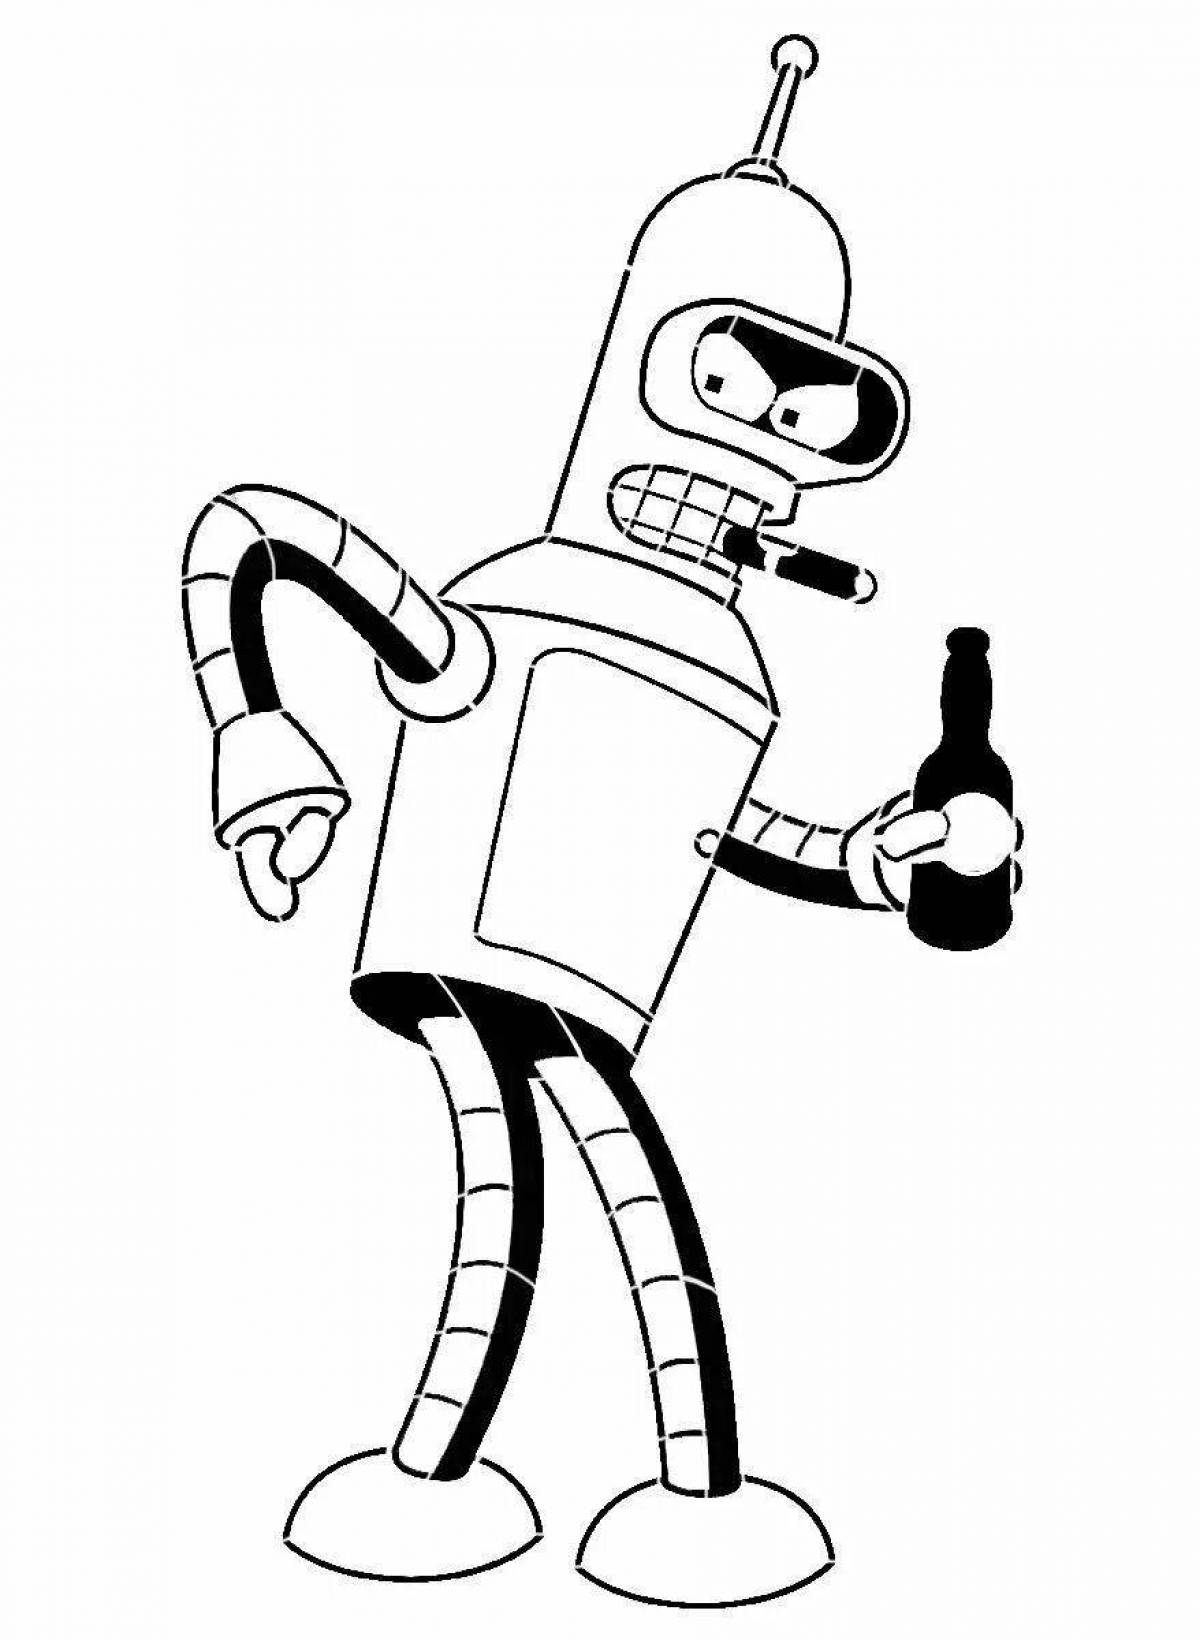 Bender #3